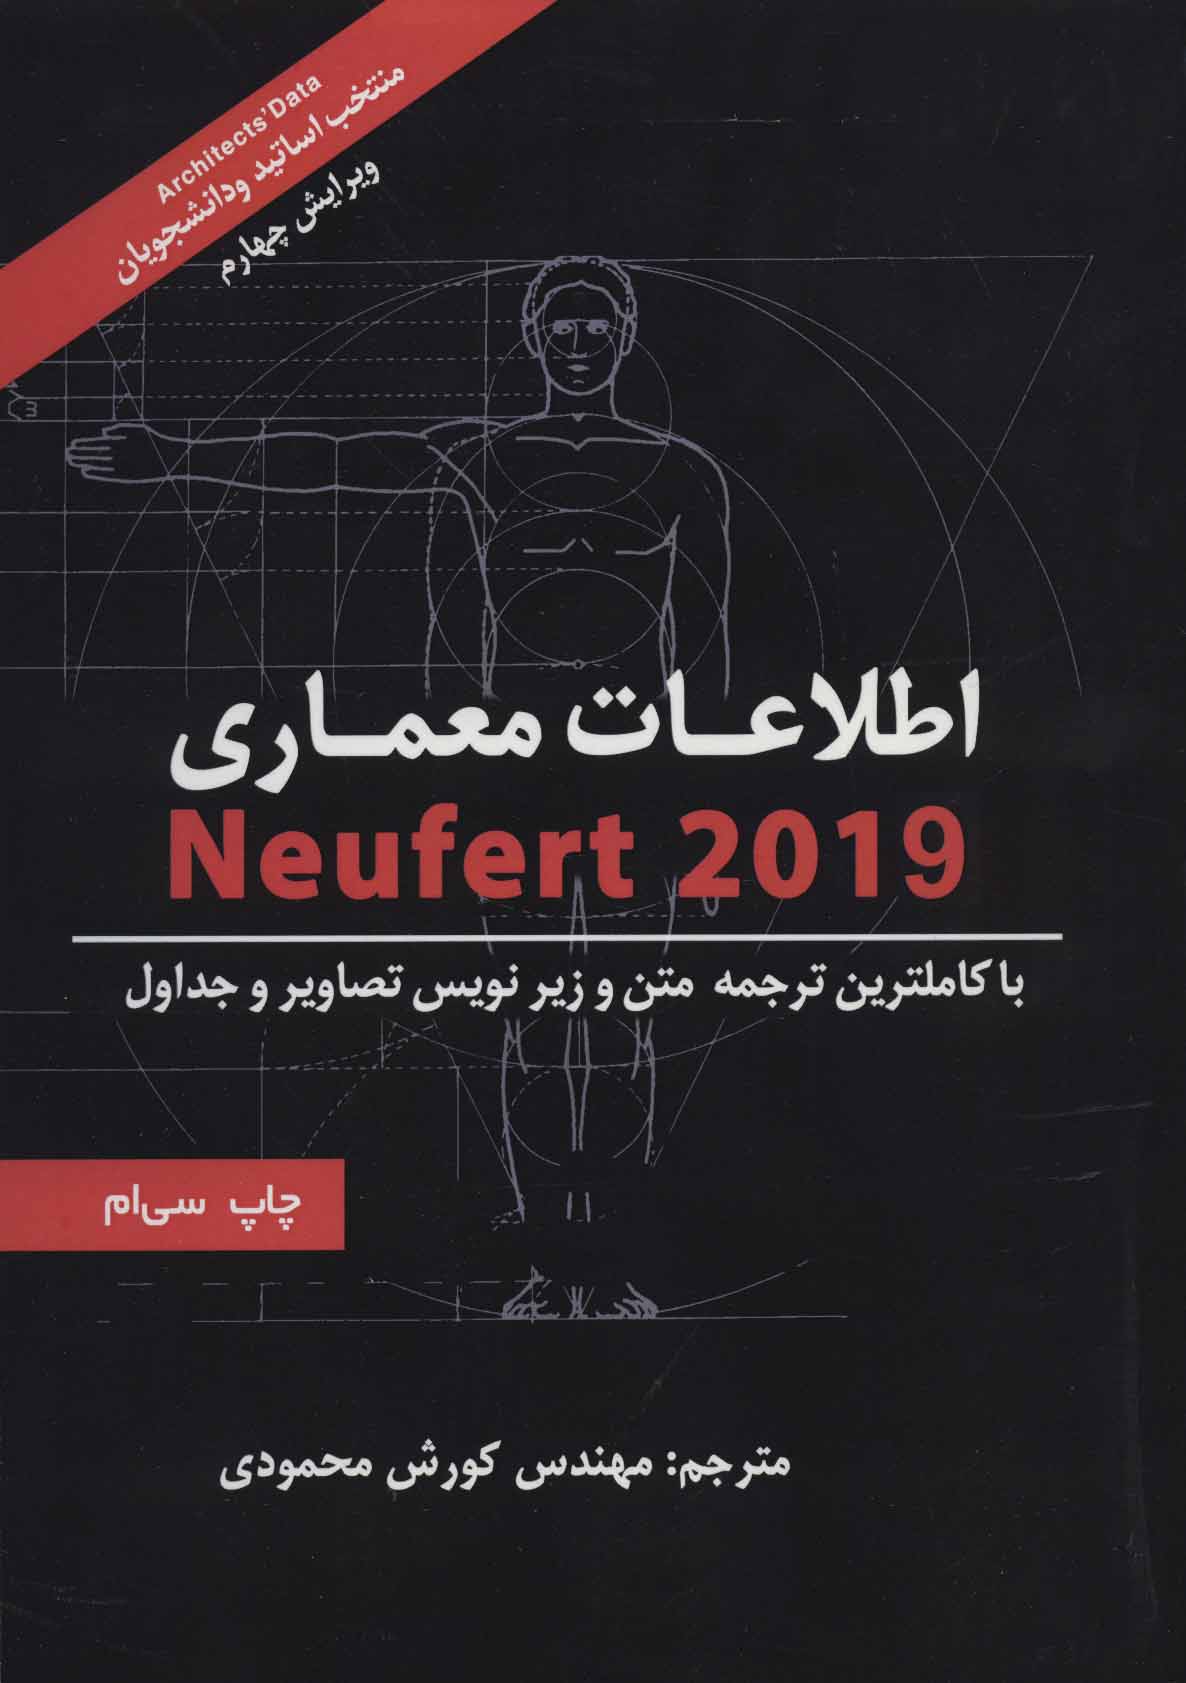 اطلاعات معماري نويفرت 2019 (Neufert)